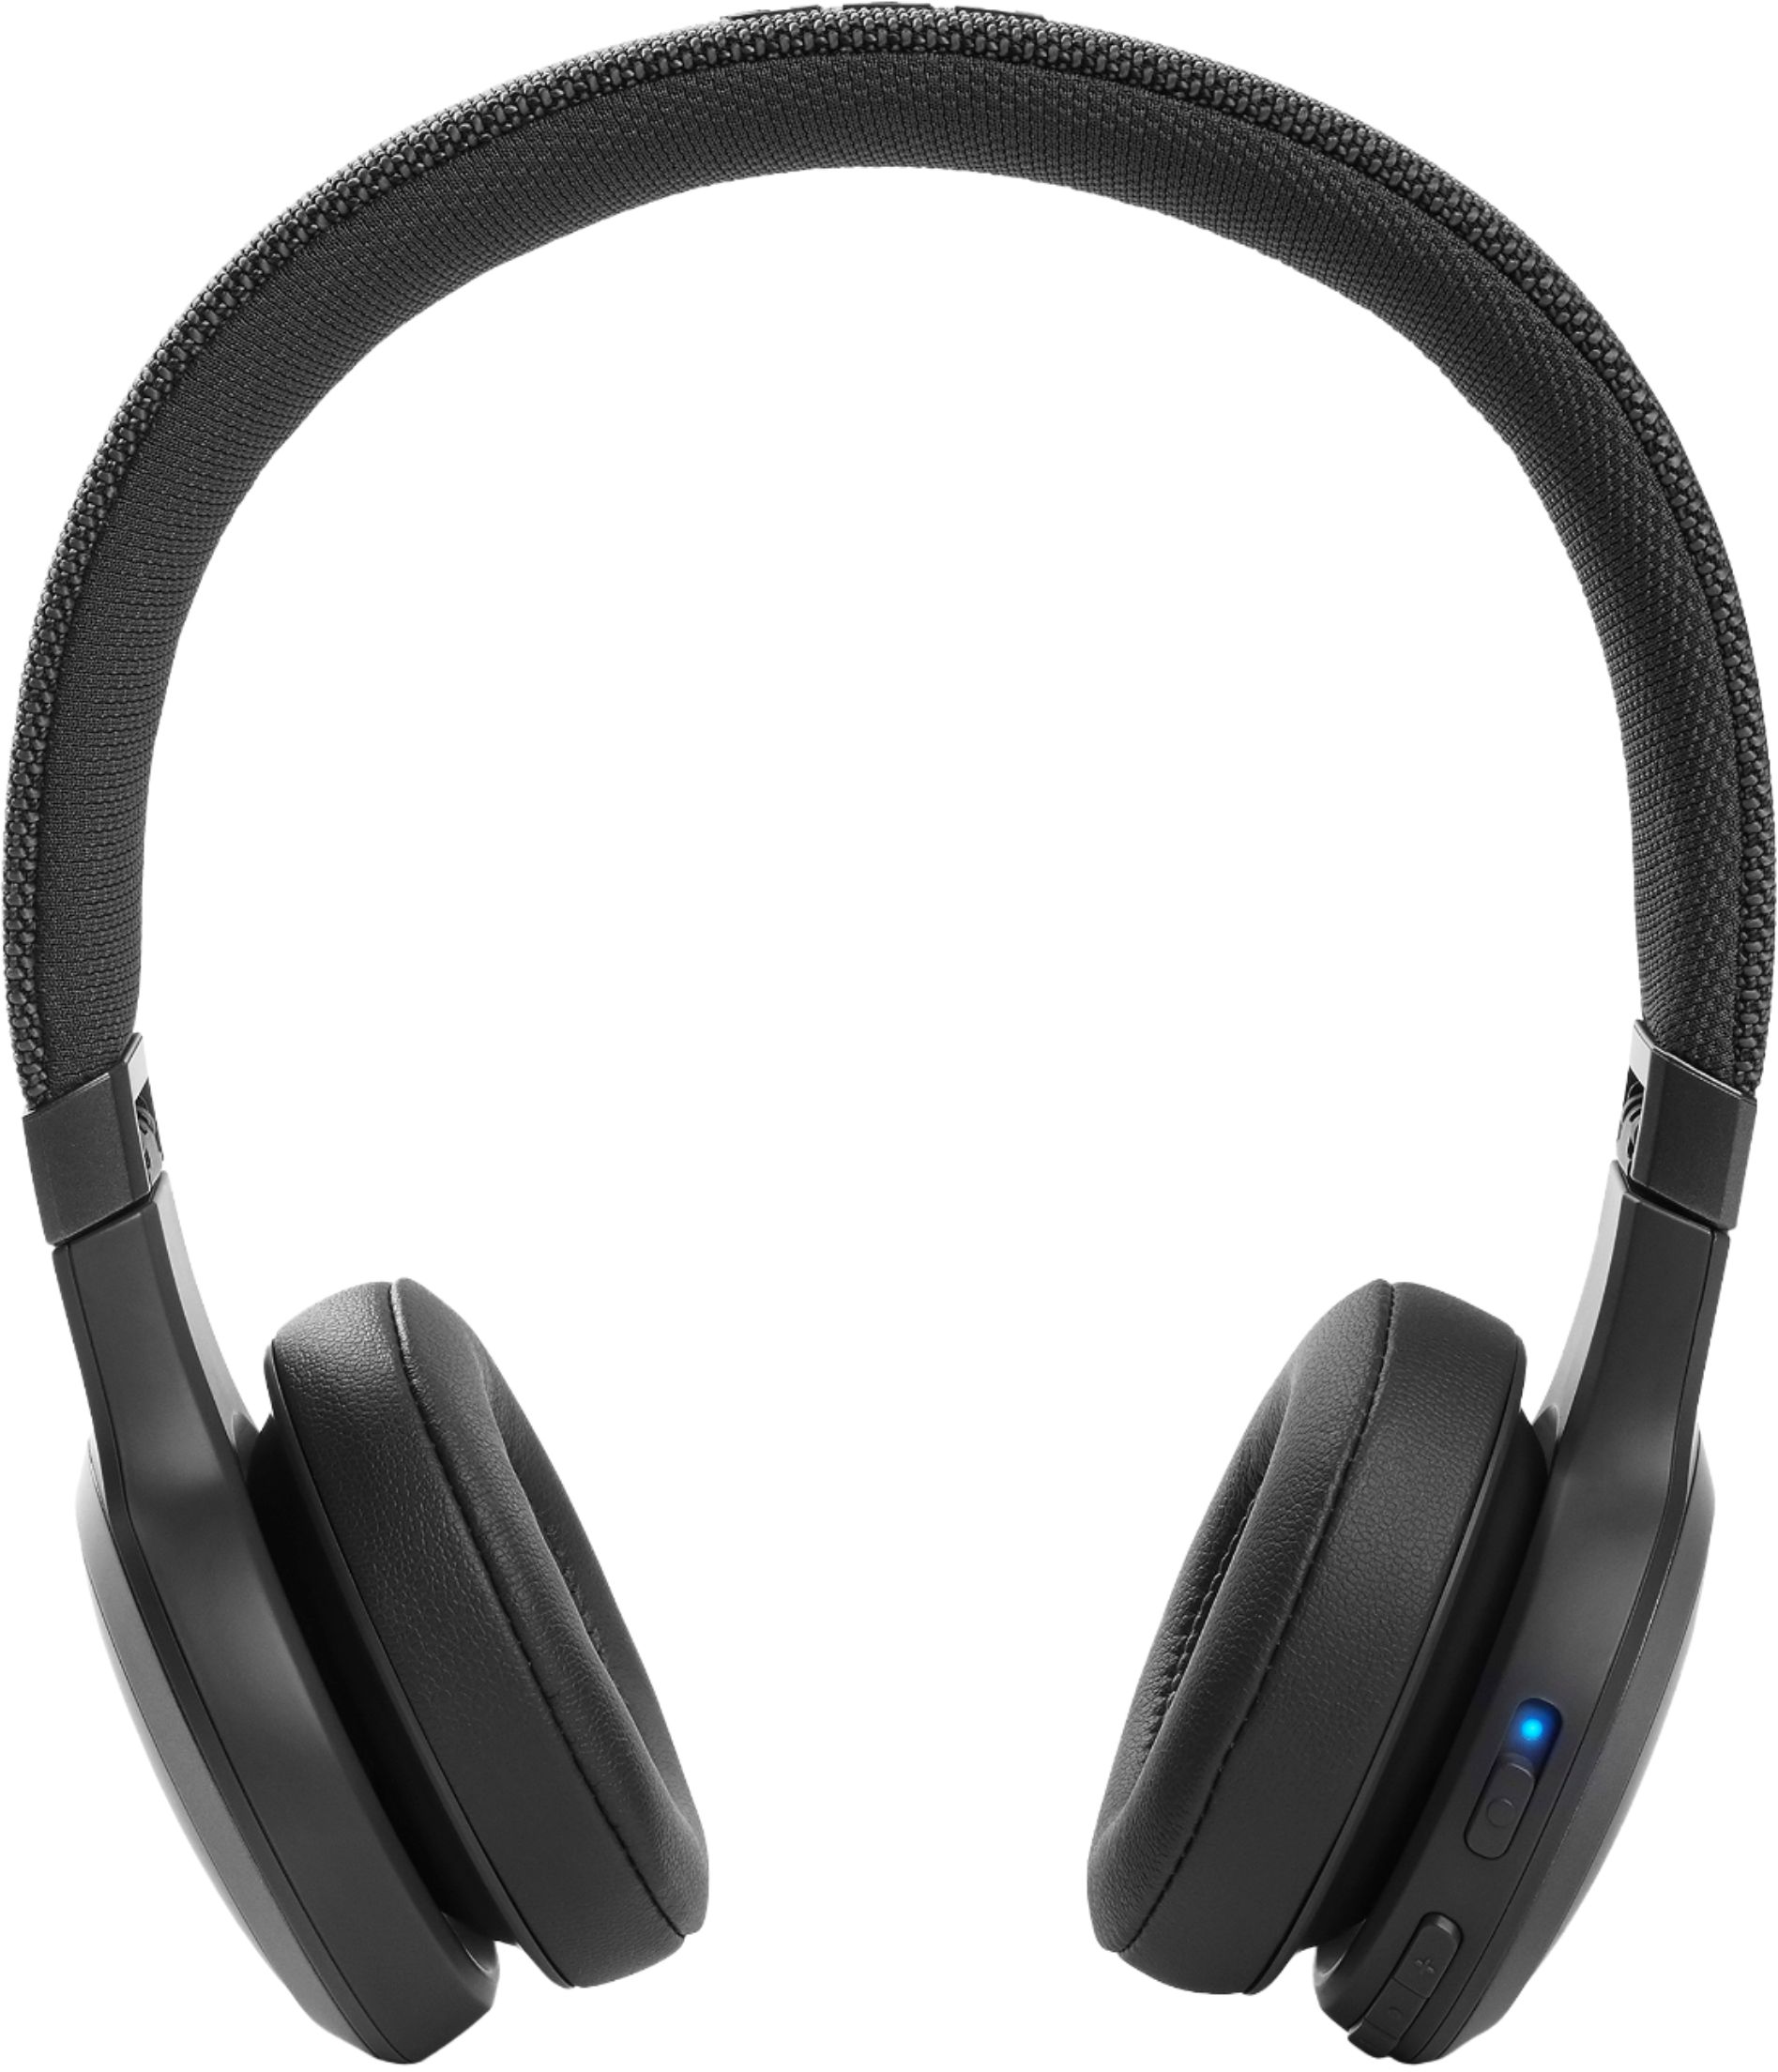 Vise dig idiom hestekræfter JBL Live460NC Wireless Noise Cancelling On-Ear Headphones Black  JBLLIVE460NCBLKAM - Best Buy